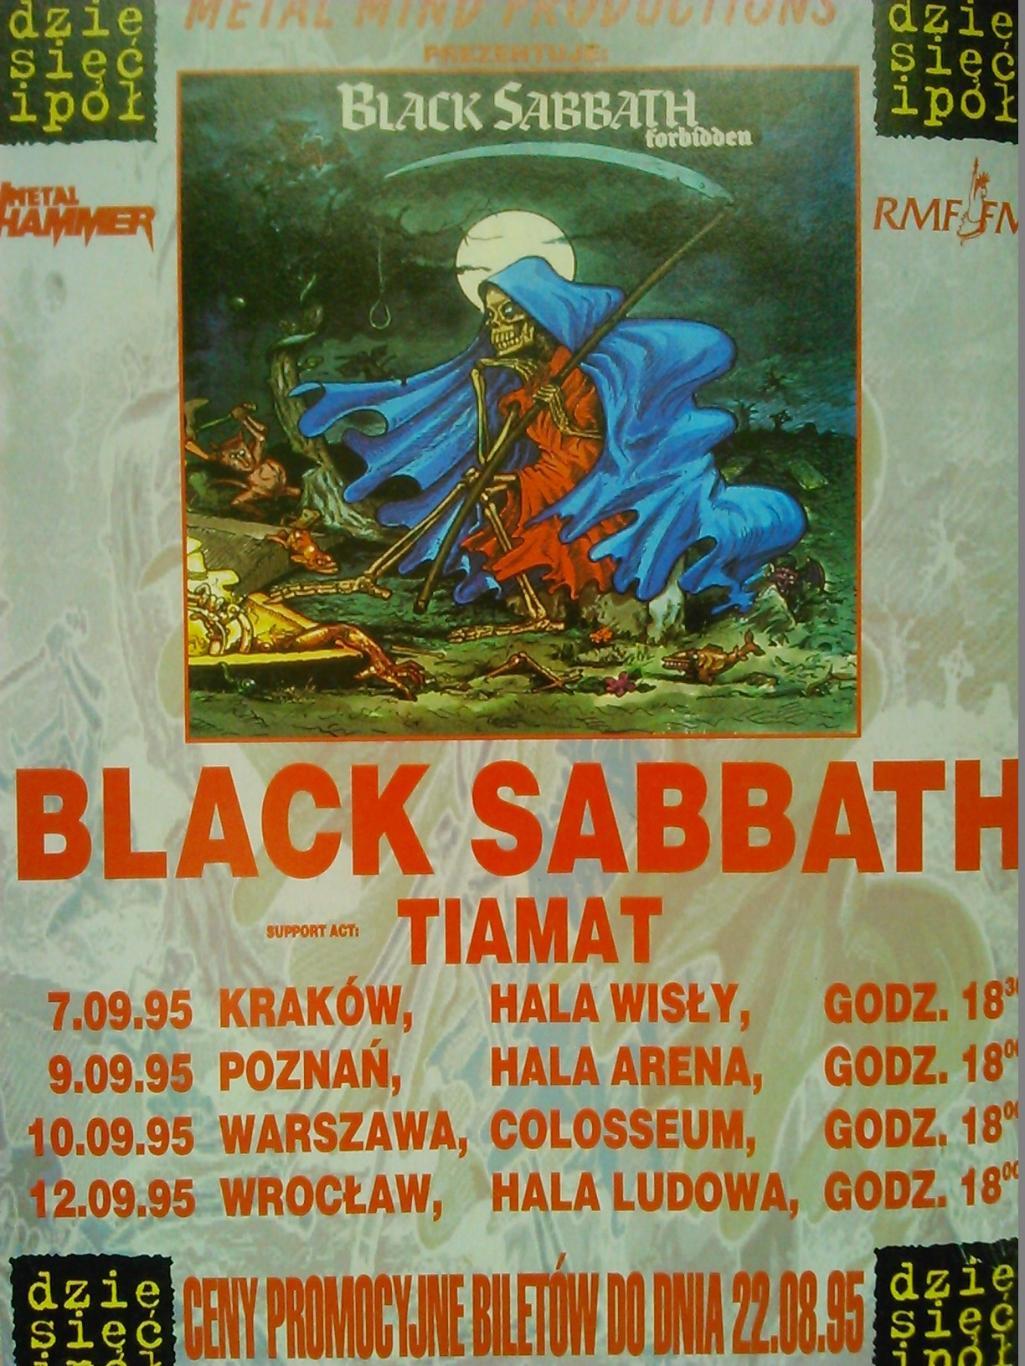 METAL HAMMER 8.1995 (Польща). Гуртом знижки до 50%! 4